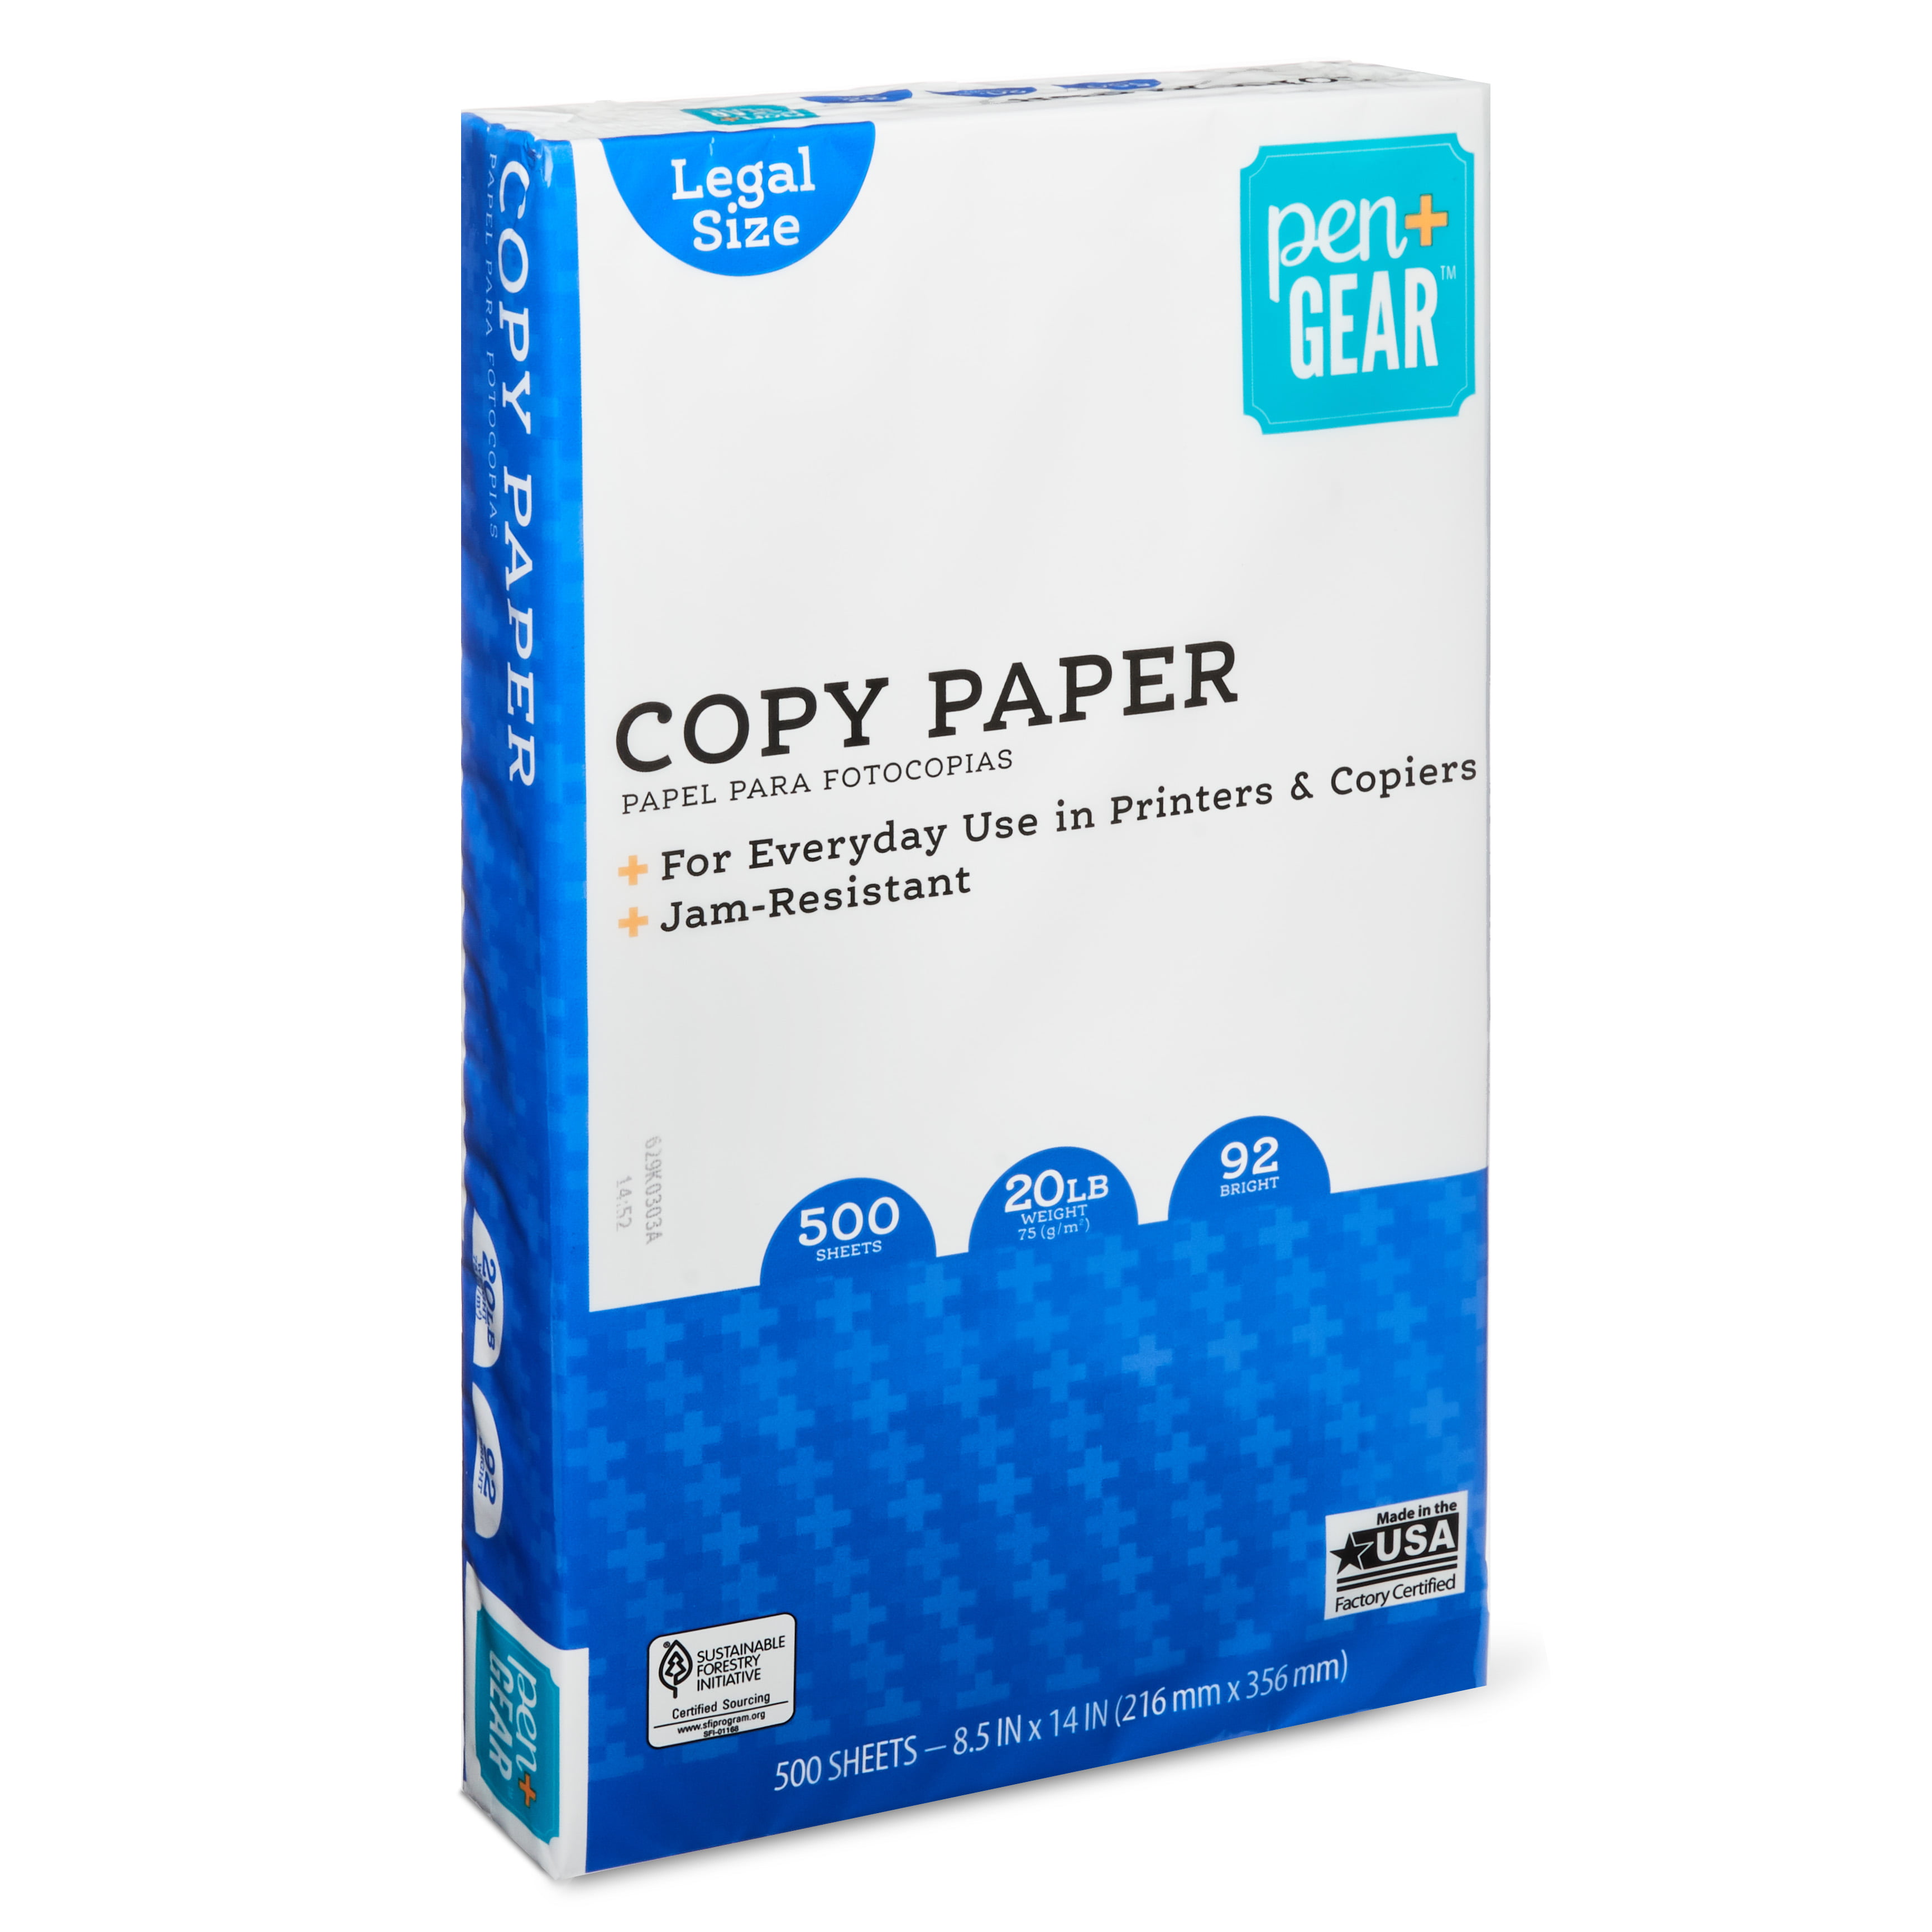 Pen Gear Legal Size Copy Paper 500 Sheets Walmart Com Walmart Com